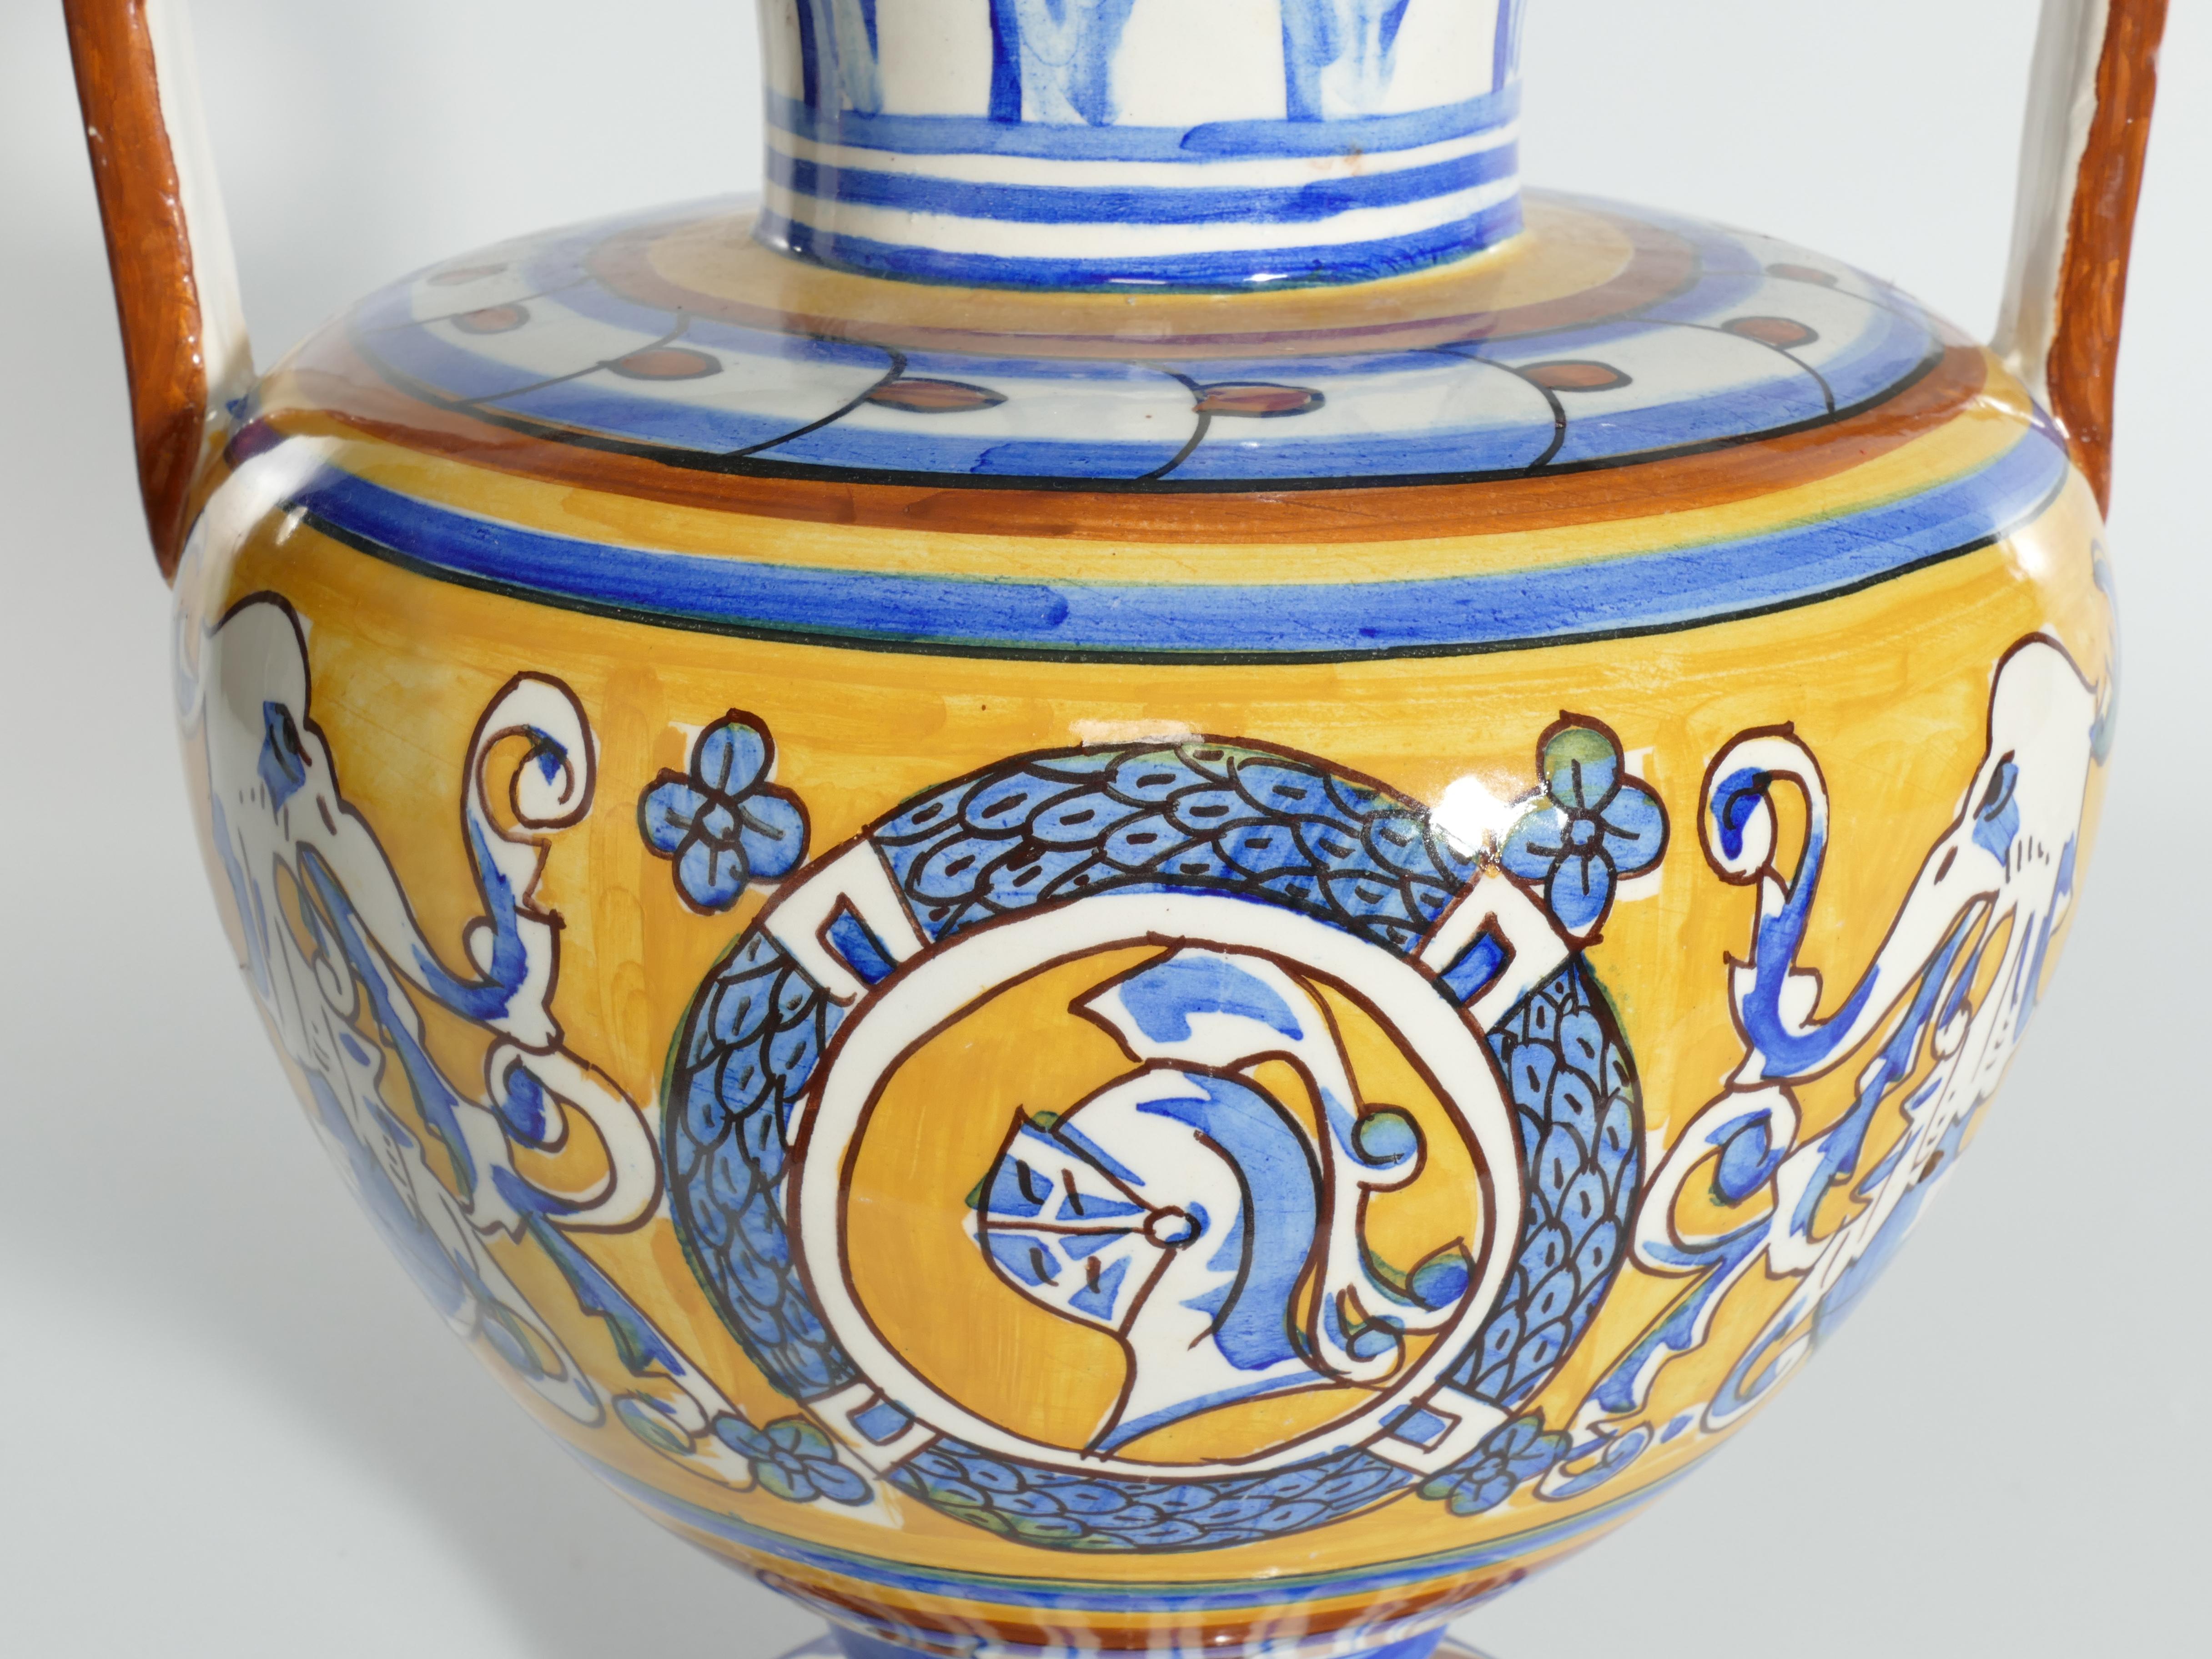 Une paire de grands vases méditerranéens absolument étonnants avec une décoration peinte à la main d'un chevalier et de dragons dans les couleurs traditionnelles de jaune, brun et bleu. Des poignées exceptionnelles avec des figures détaillées. 

Ces